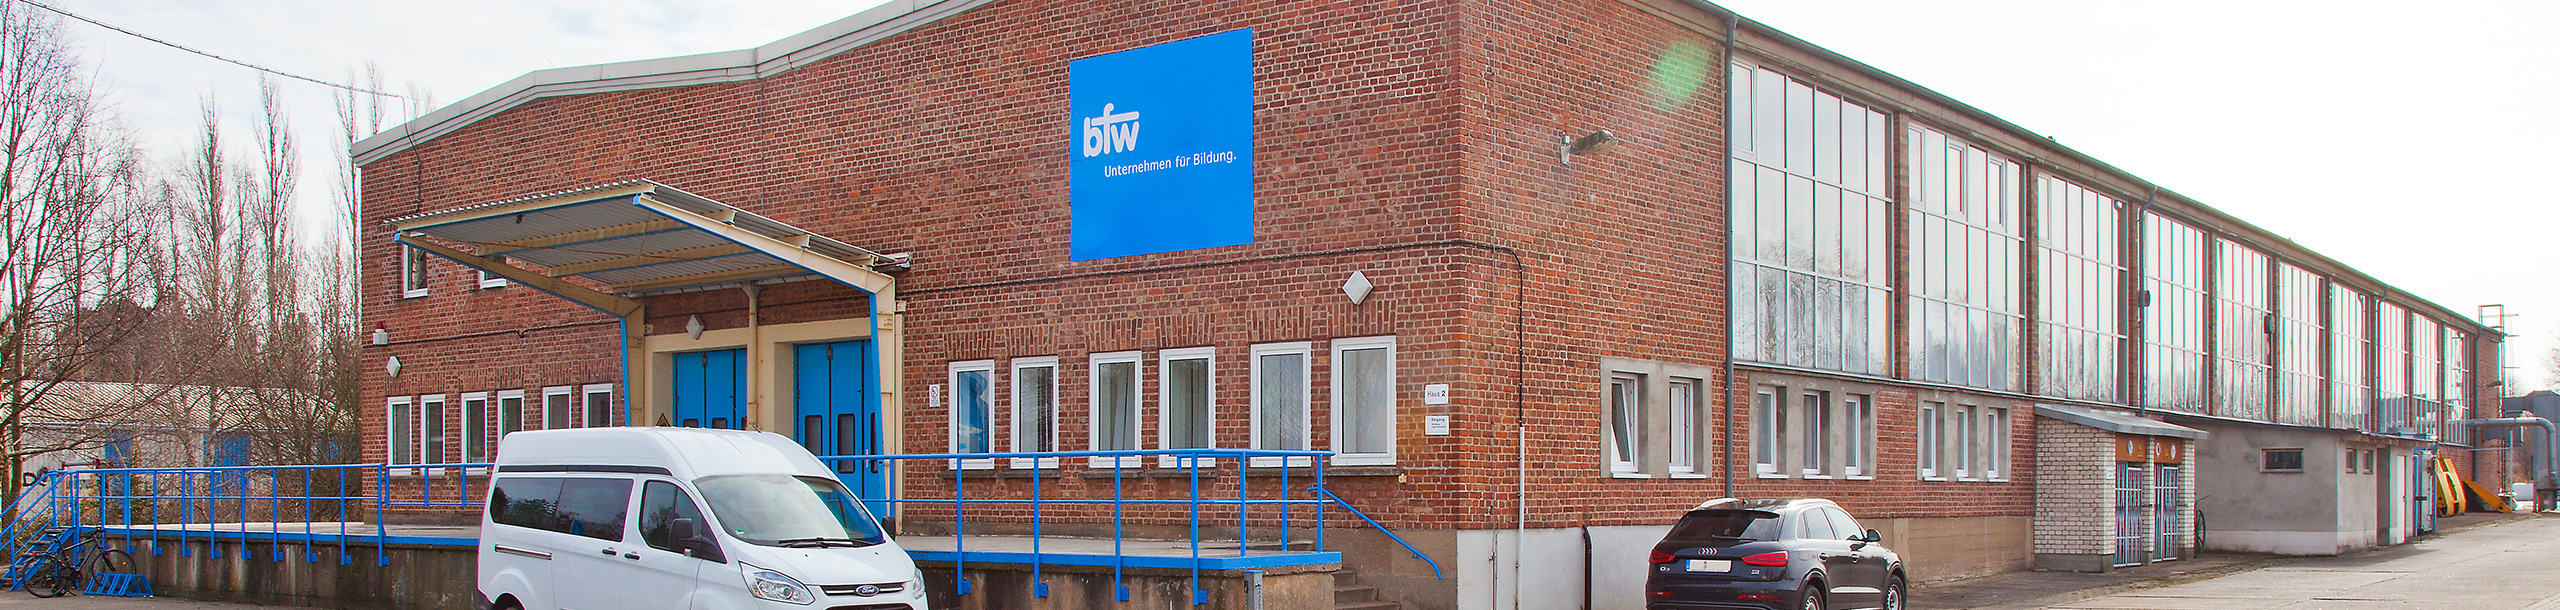 bfw - Unternehmen für Bildung. Rostock